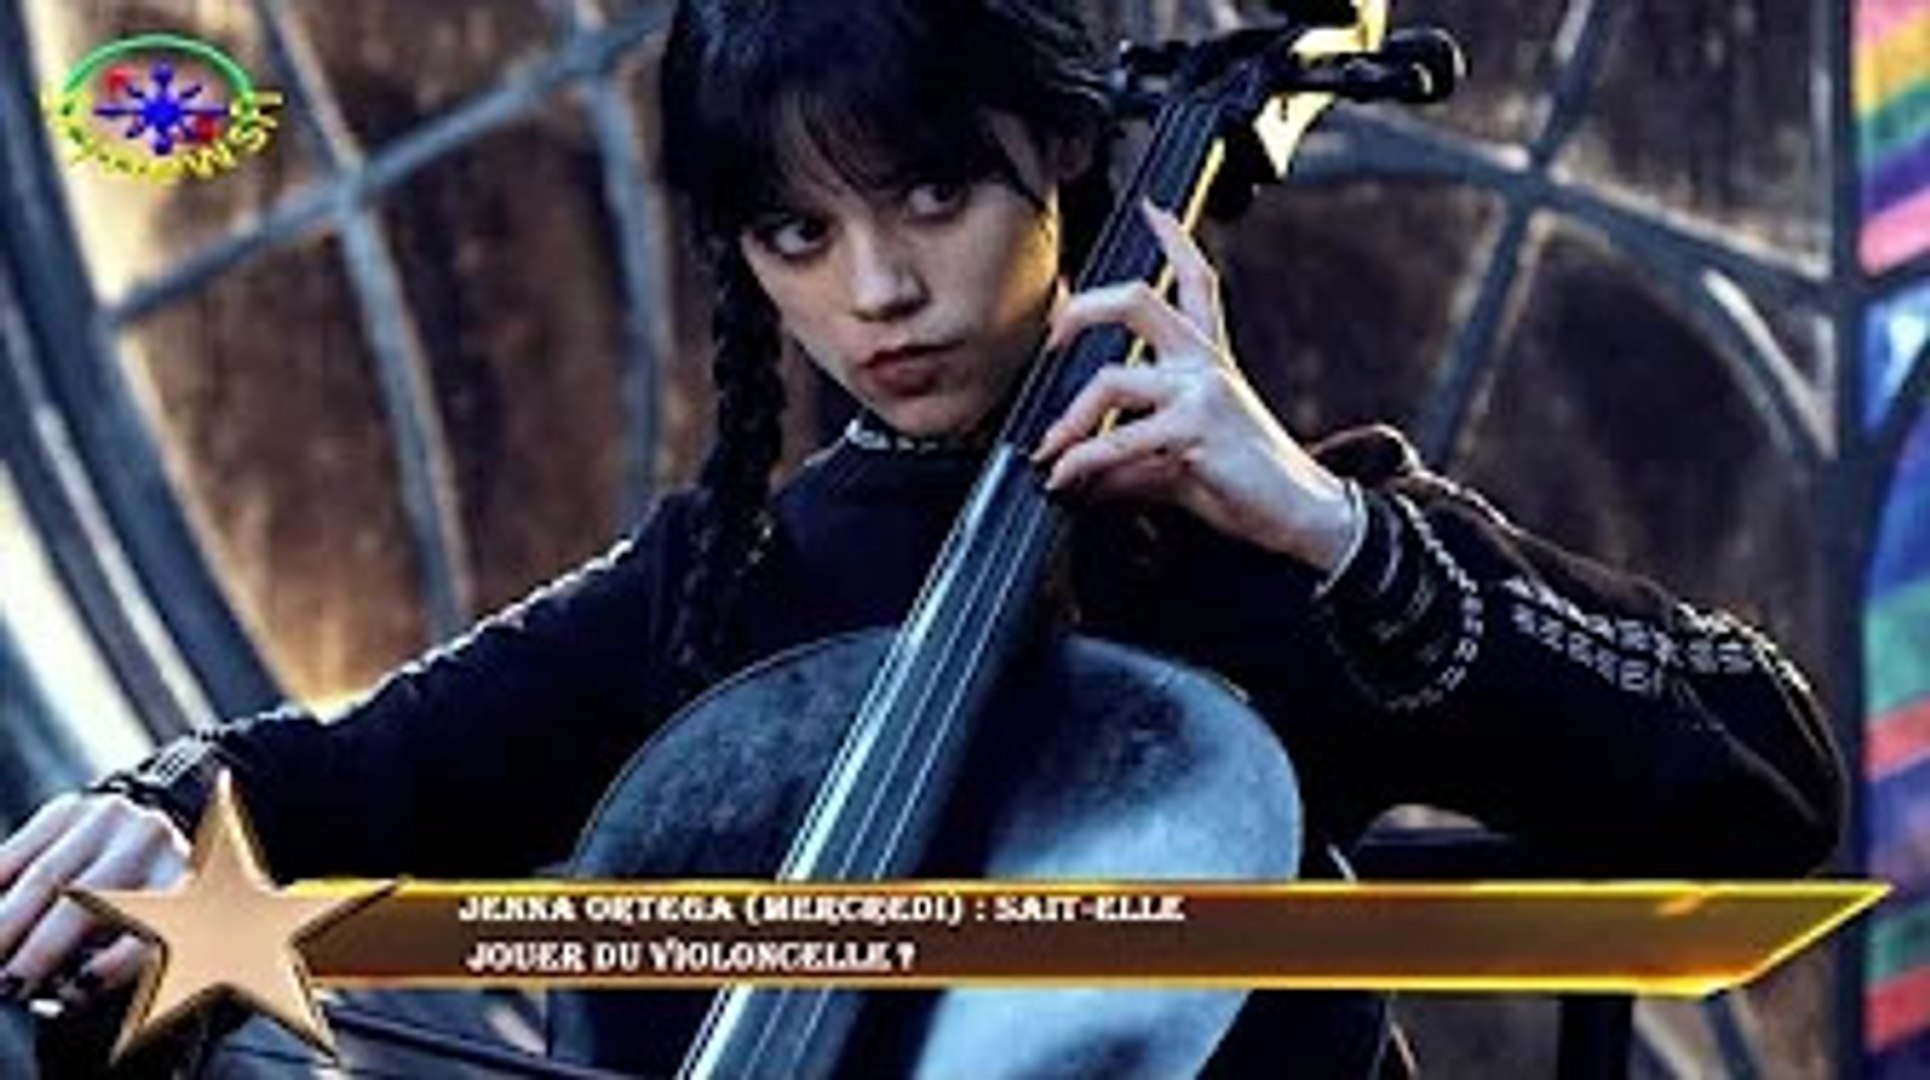 Jenna Ortega (Mercredi) : sait-elle jouer du violoncelle ? - Vidéo  Dailymotion